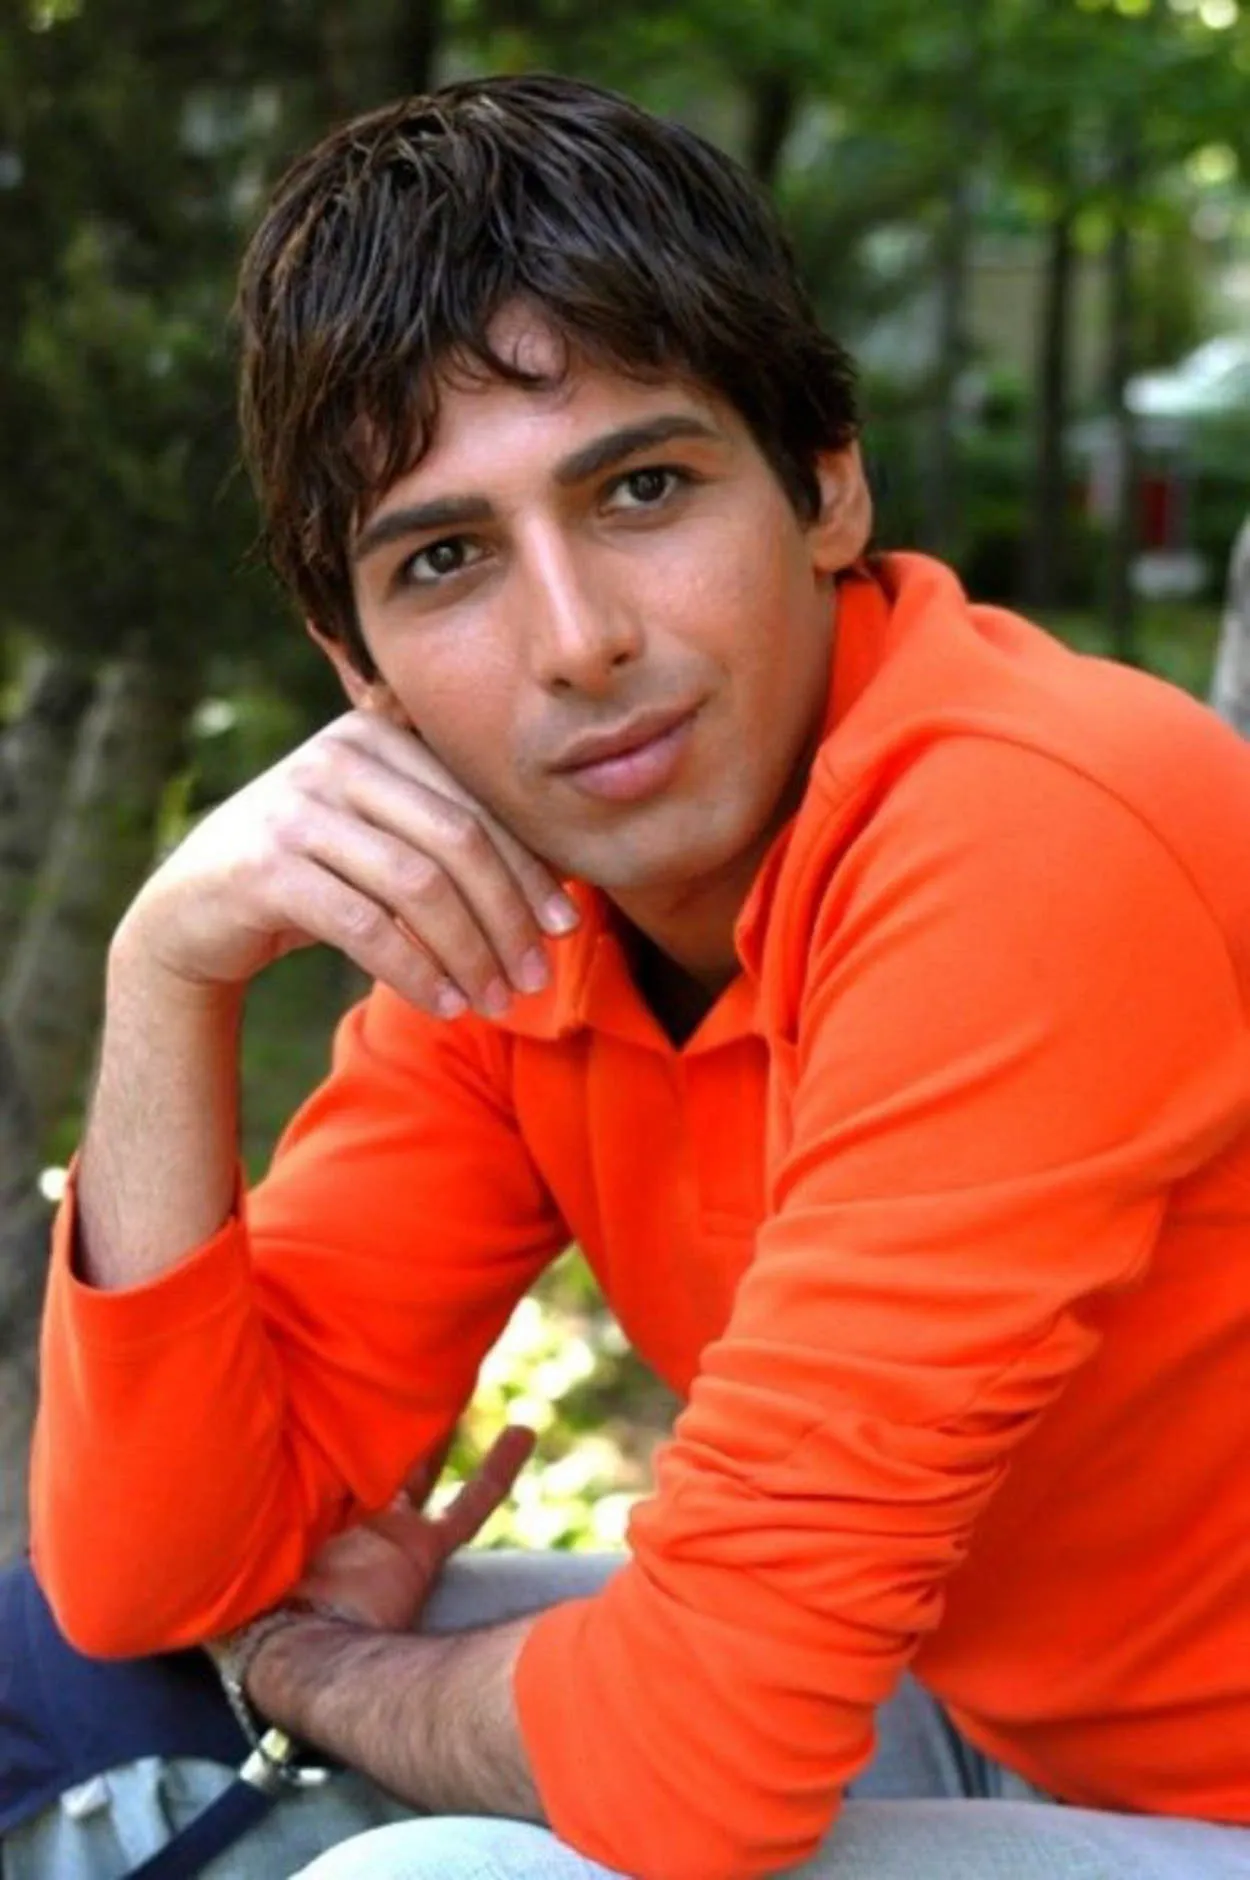 Iran handsome boy or actor